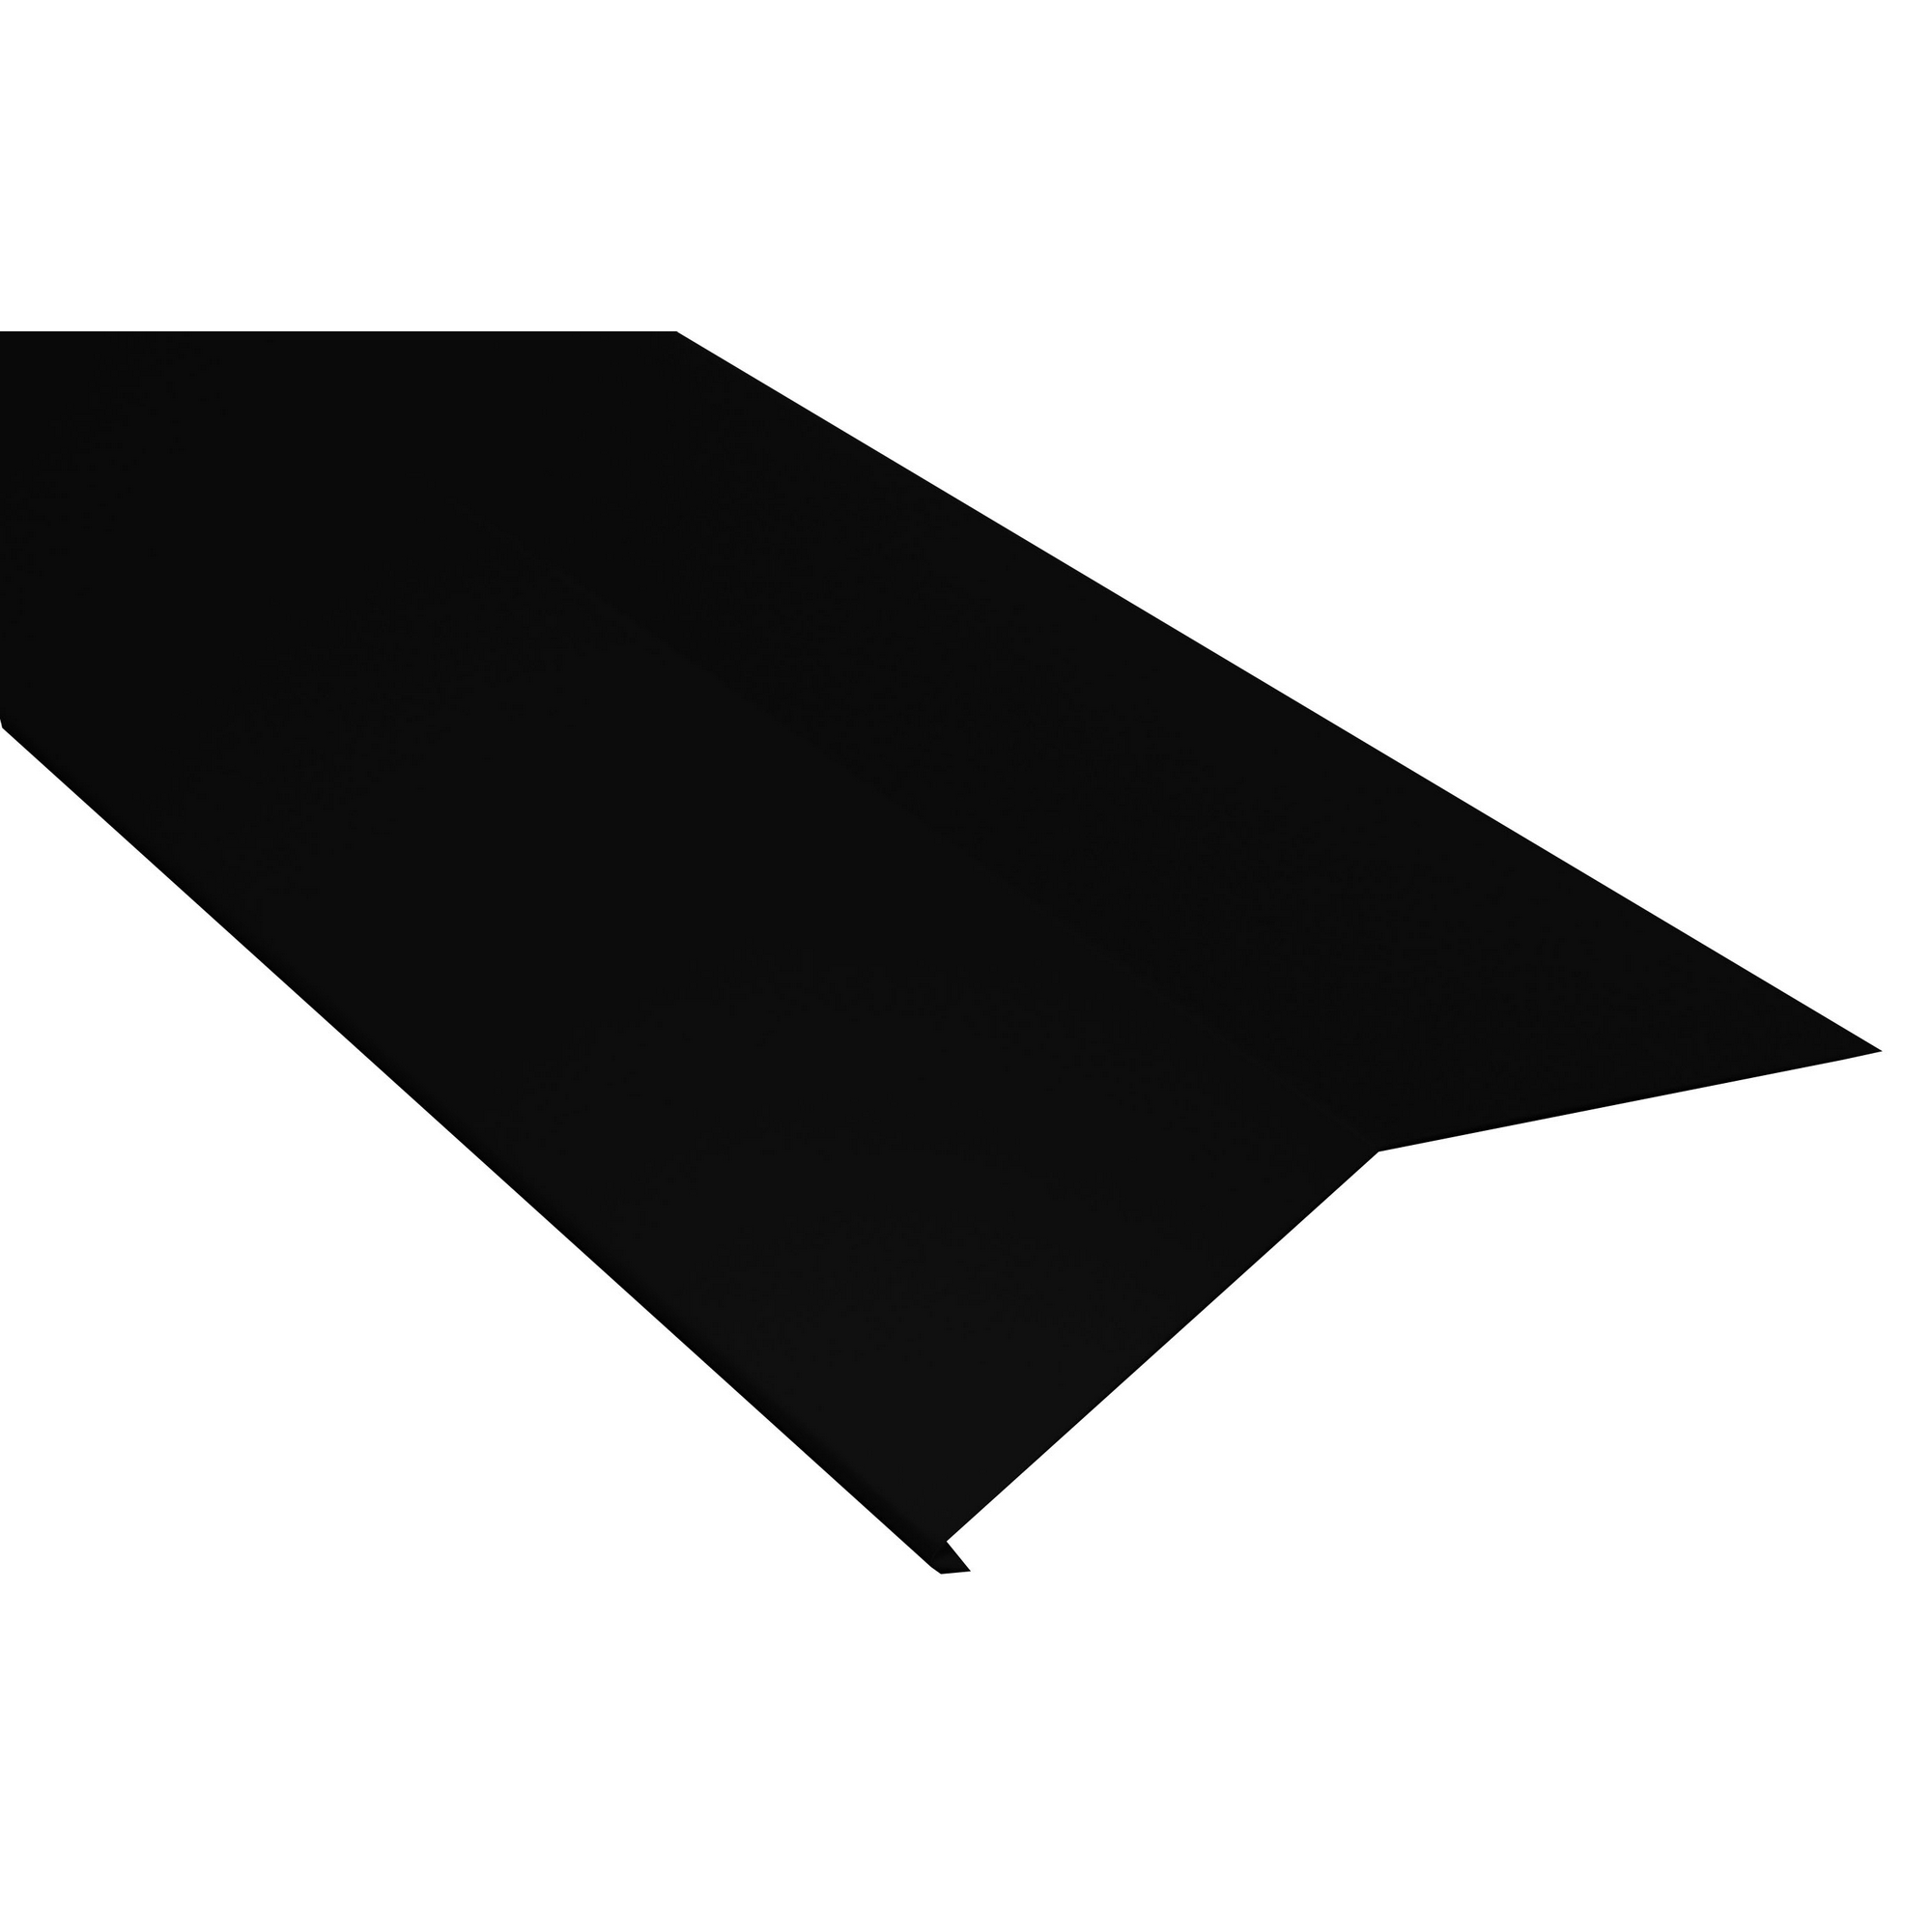 Schürze für Dachrinnen schwarz verzinkt 200 x 20,8 x 0,04 cm + product picture